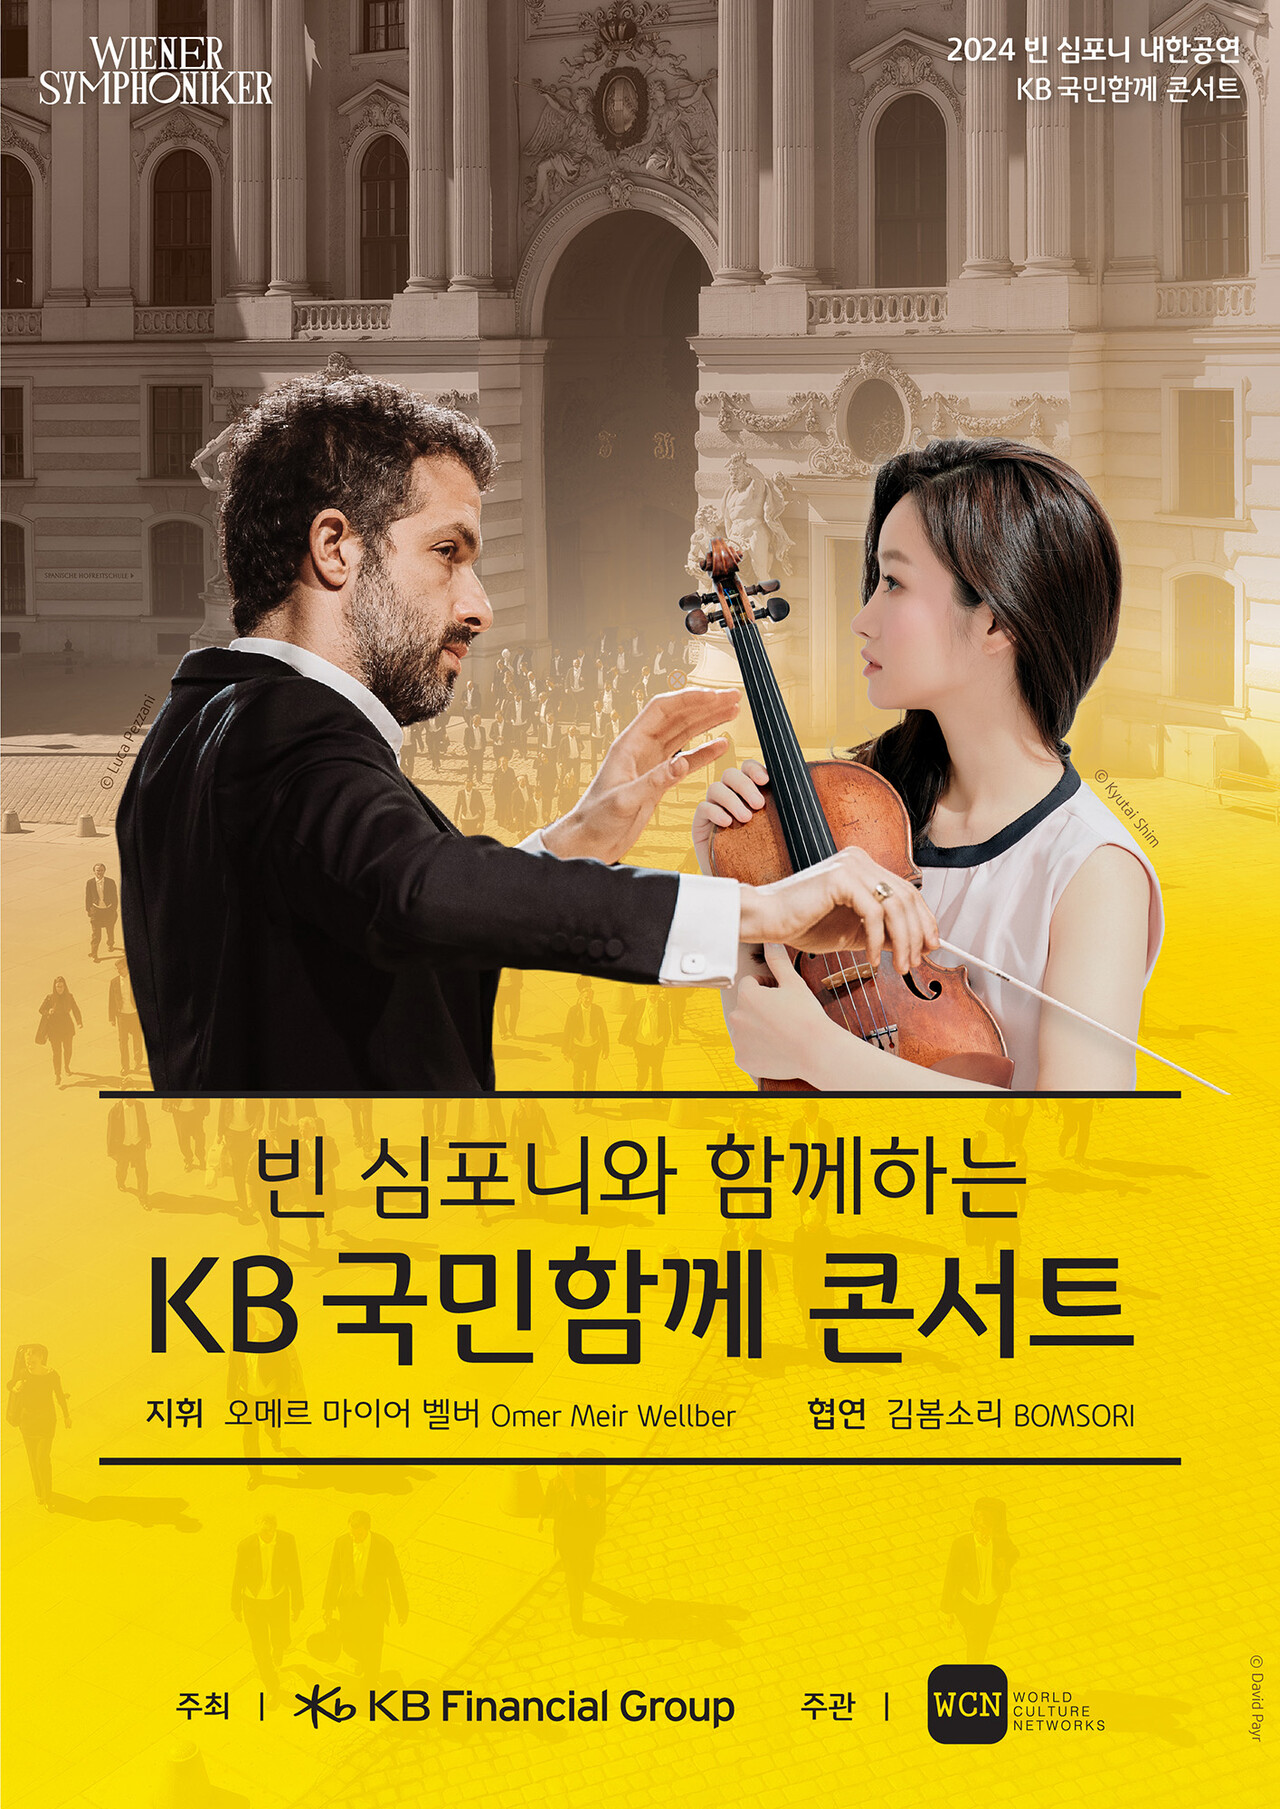 KB금융그룹은 오는 17일부터 20일까지 대구·세종·서울에서 '빈 심포니와 함께하는 KB 국민함께 콘서트'를 개최한다고 15일 밝혔다 [KB금융그룹 제공=뉴스퀘스트]